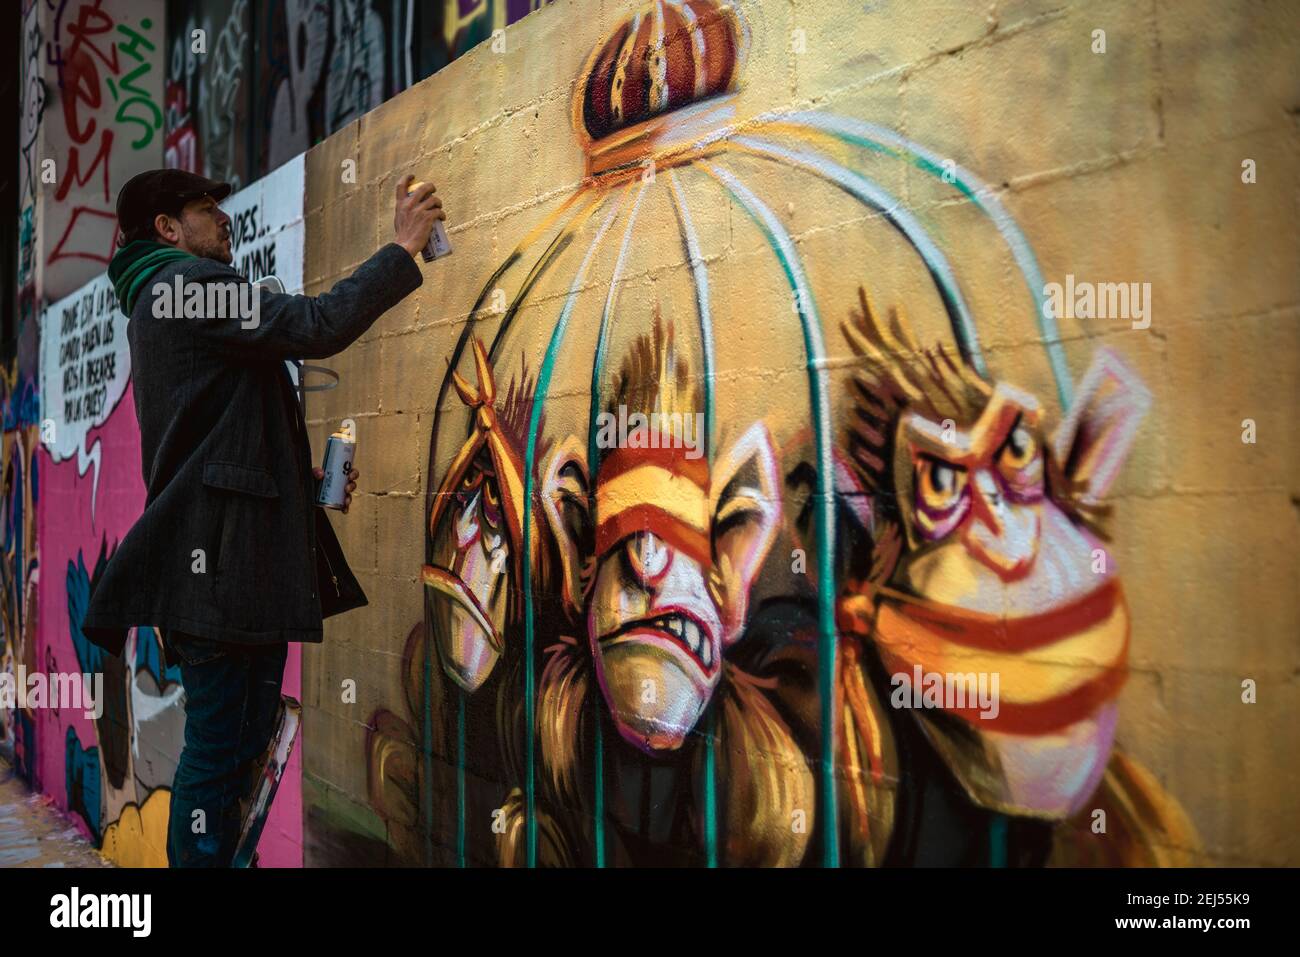 Barcelona, Spanien. Februar 2021, 21st. Ein Straßenkünstler malt Graffiti, das Spaniens Monarchie zur Unterstützung des inhaftierten Rapkünstlers Pablo Hasel kritisiert. Verurteilt wegen Verherrlichung des Terrorismus und Beleidigung des ehemaligen spanischen Königs in Texten, nach fünf Nächten von Unruhen. Quelle: Matthias Oesterle/Alamy Live News Stockfoto